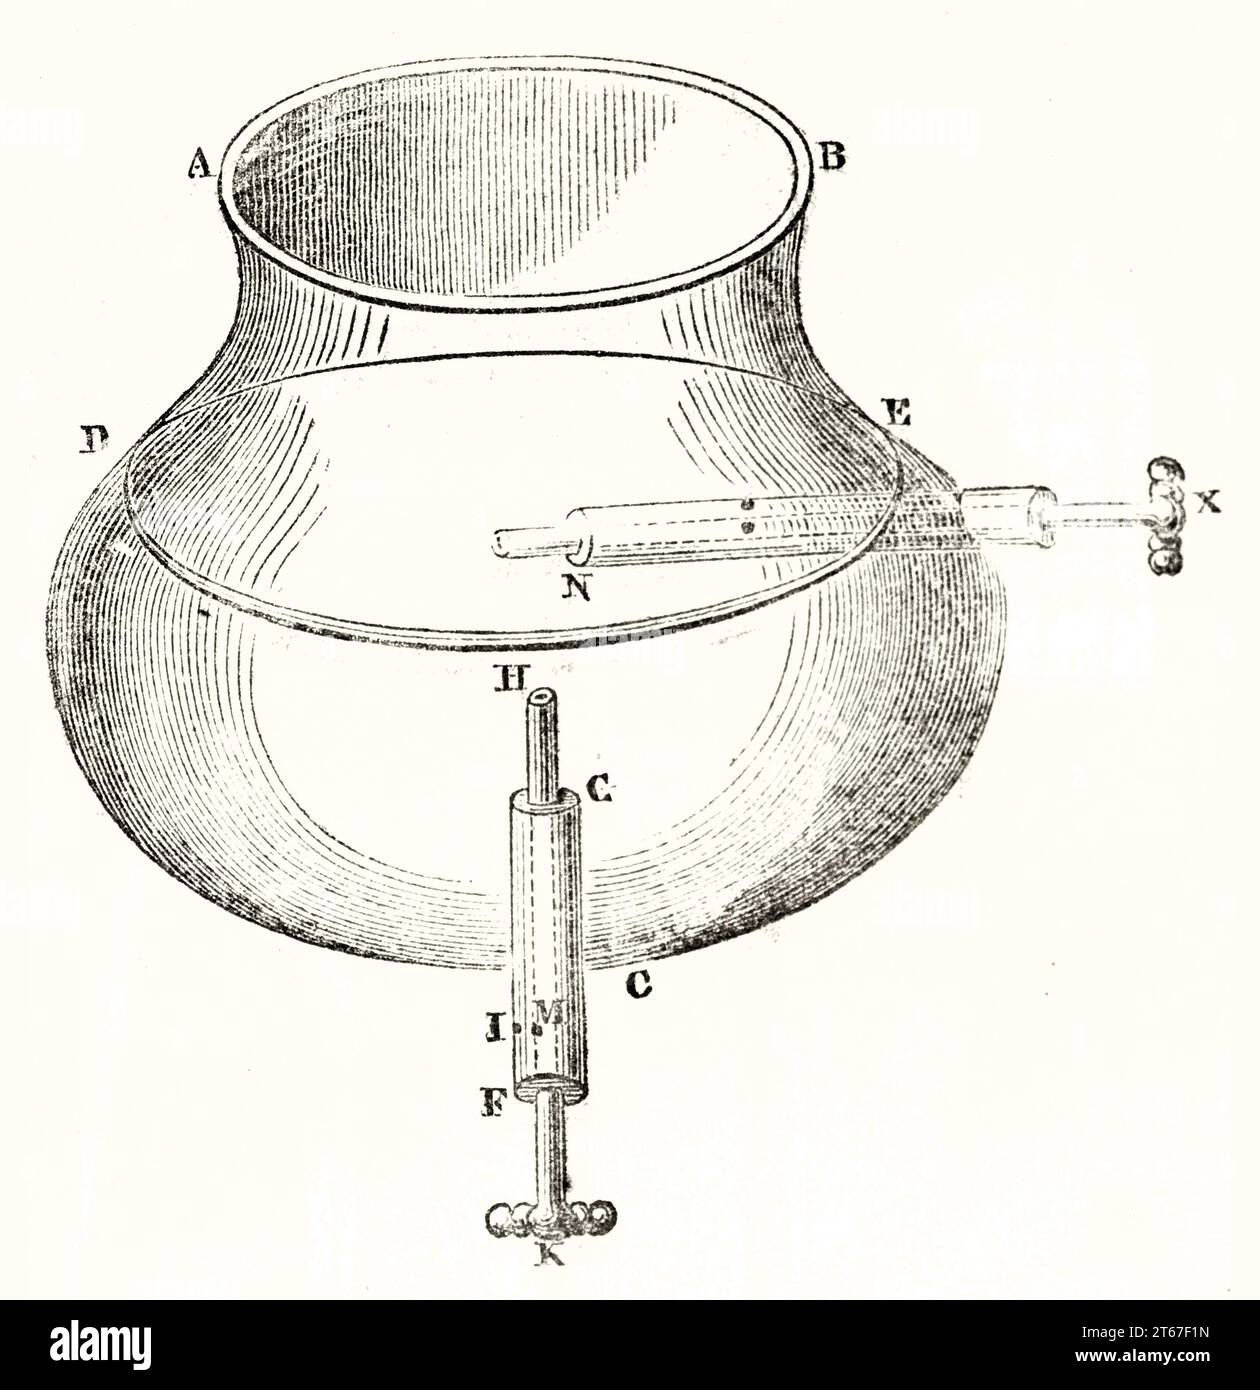 Illustration antique de la plus ancienne machine pneumatique (par héros d'Alexandrie). Publ. Sur magasin pittoresque, Paris, 1851 Banque D'Images